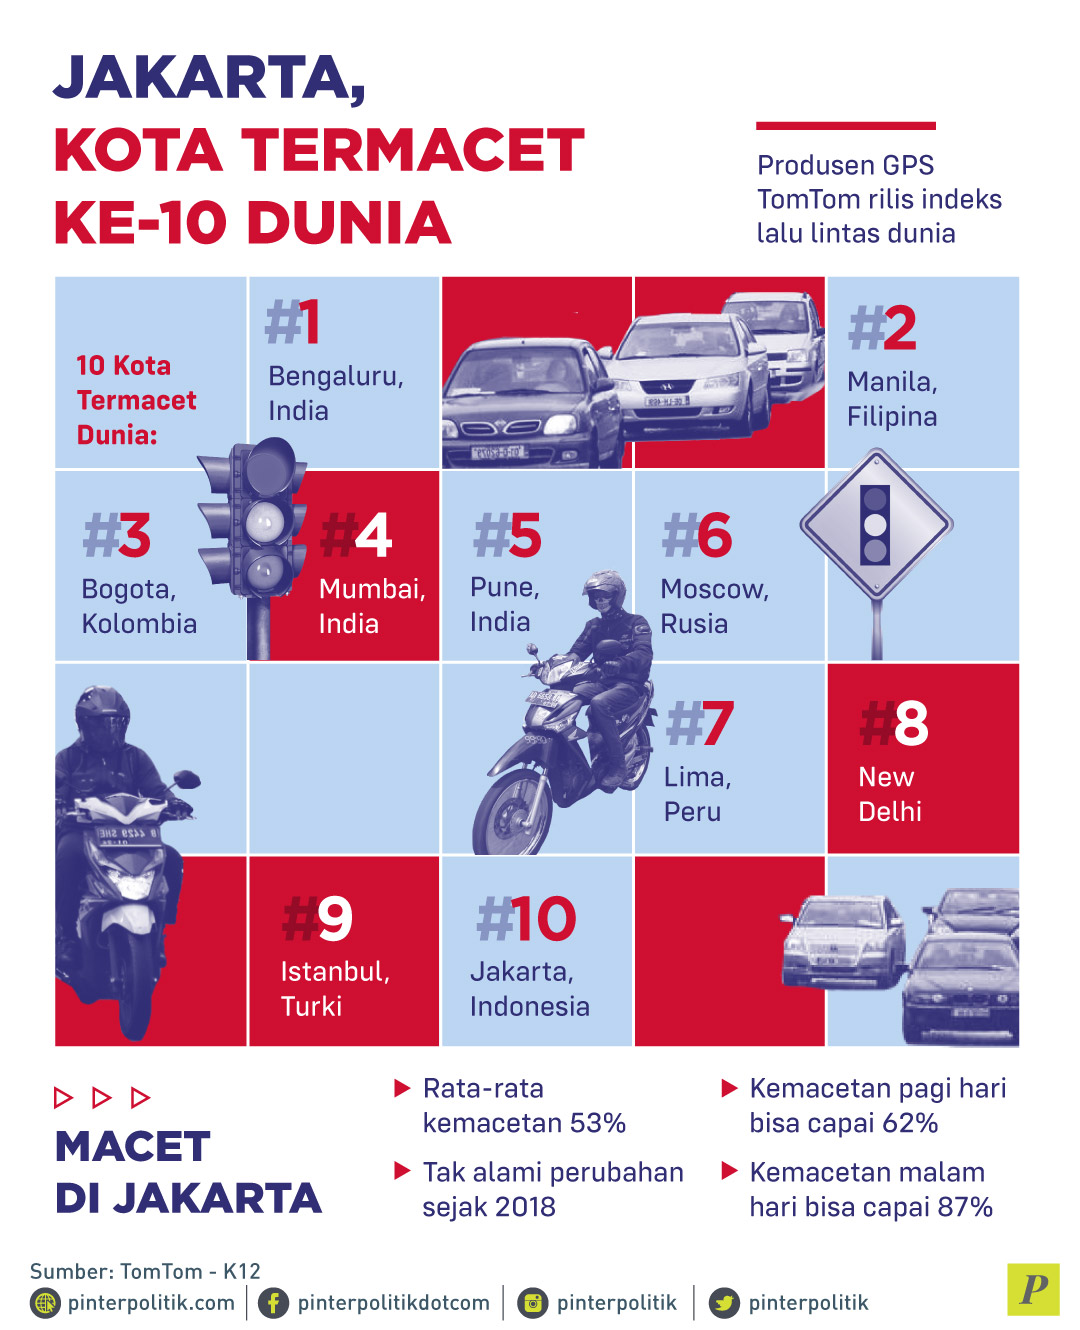 Jakarta Kota Termacet ke-10 Dunia